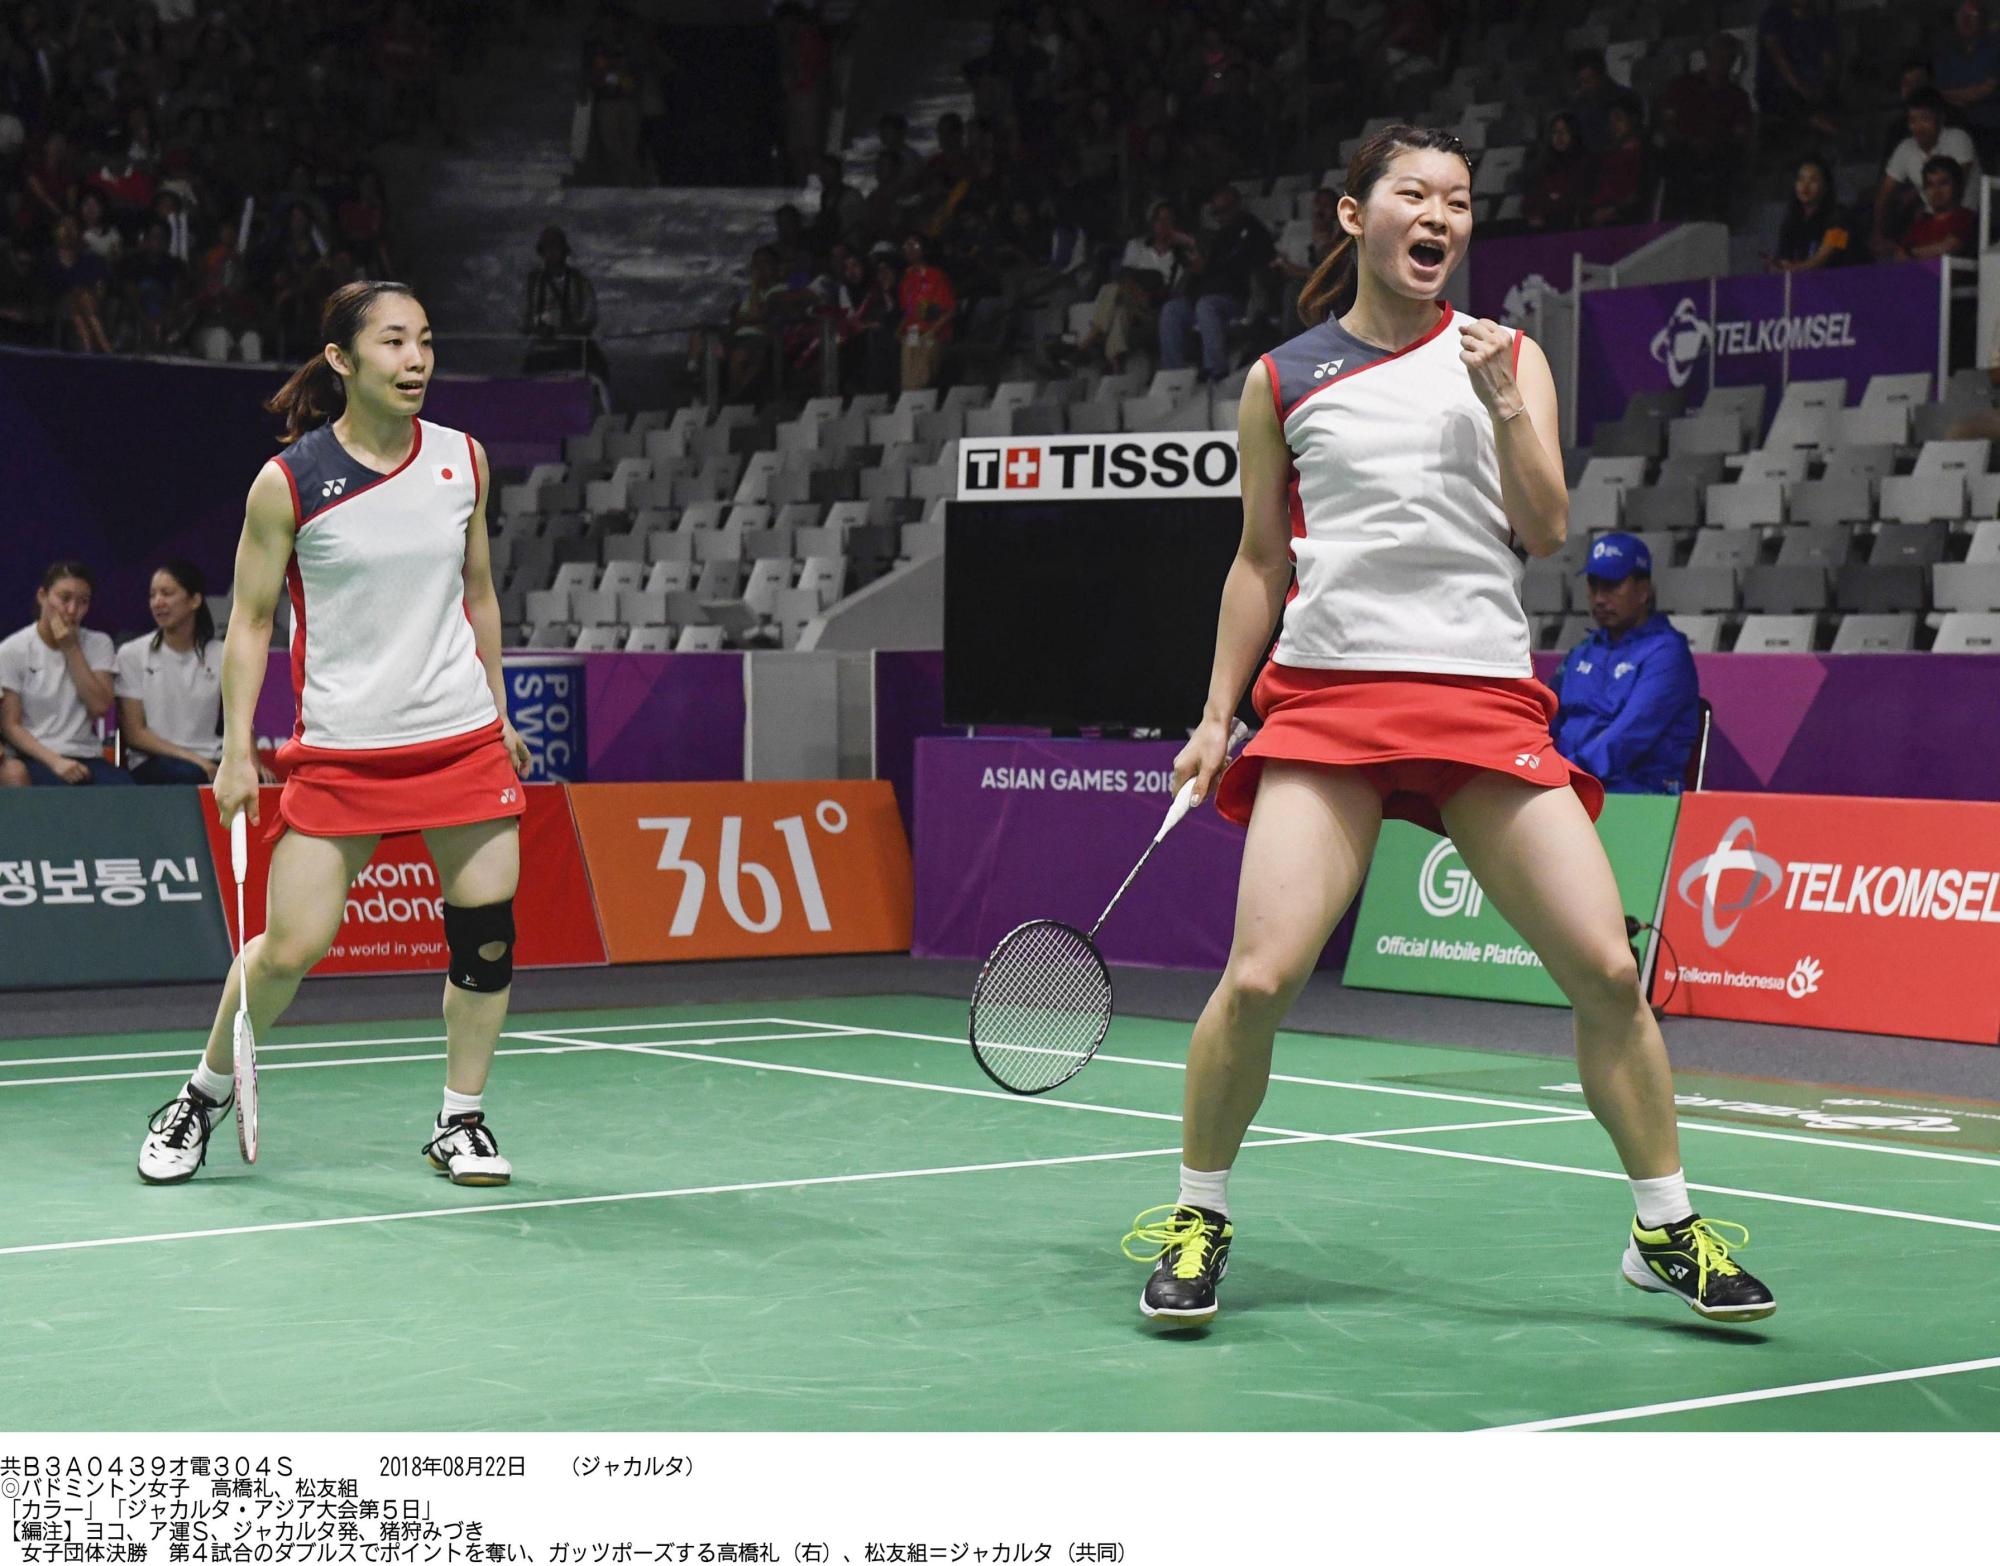 Japan womens badminton, mens fencing teams nab gold medals at Asian Games 